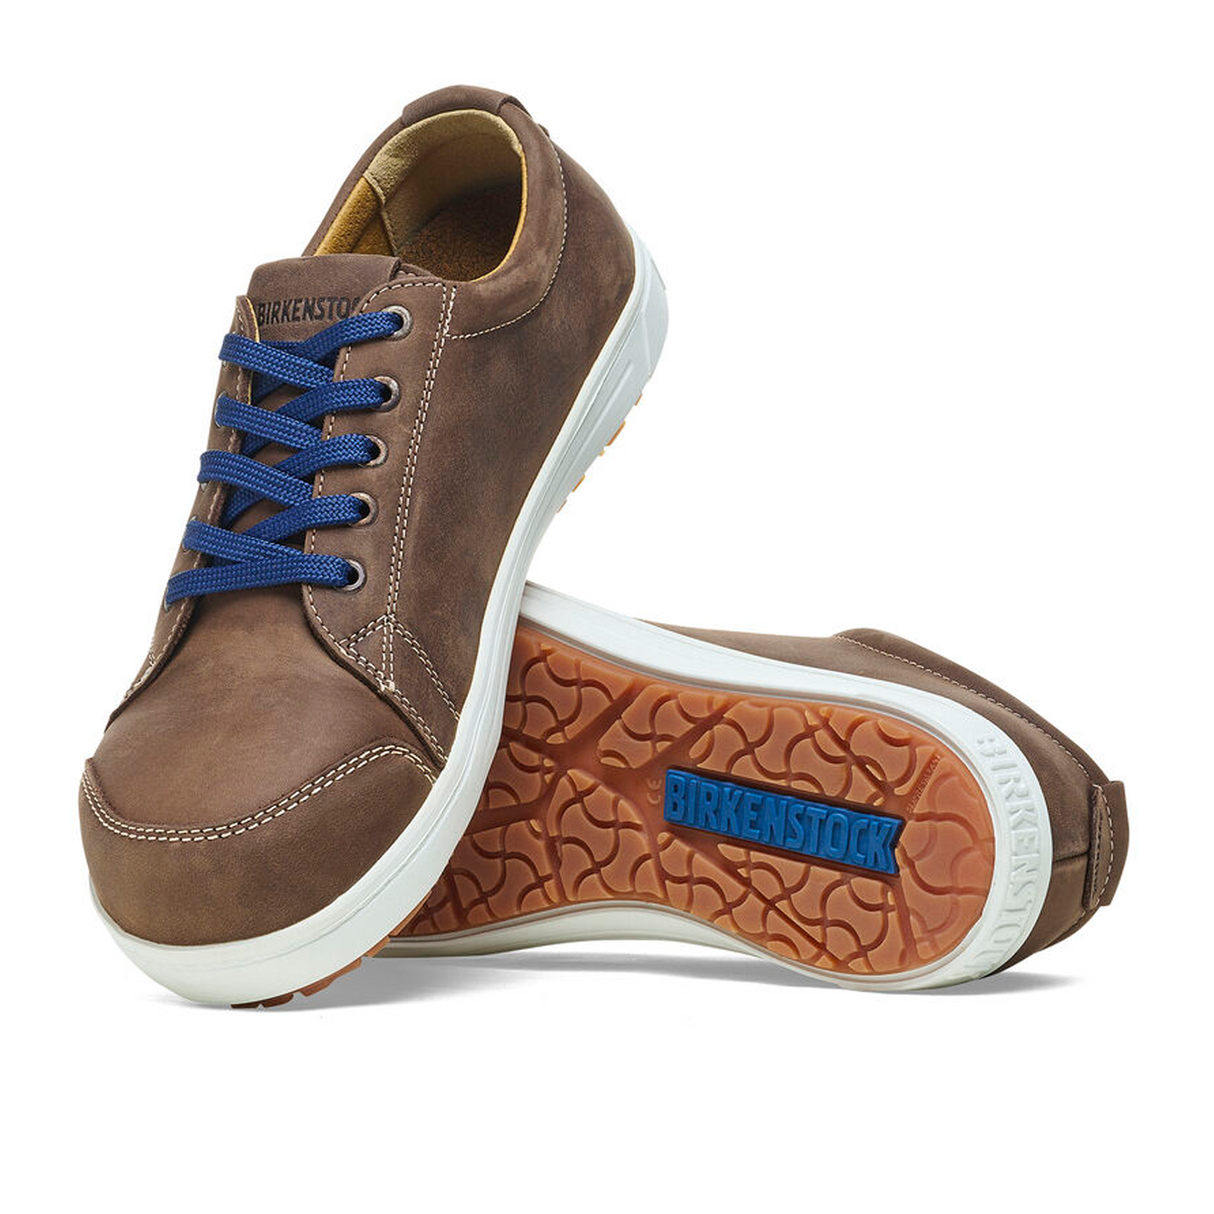 Birkenstock QS500 Steel Toe (Men) - Brown Nubuck Leather  - The Heel Shoe Fitters